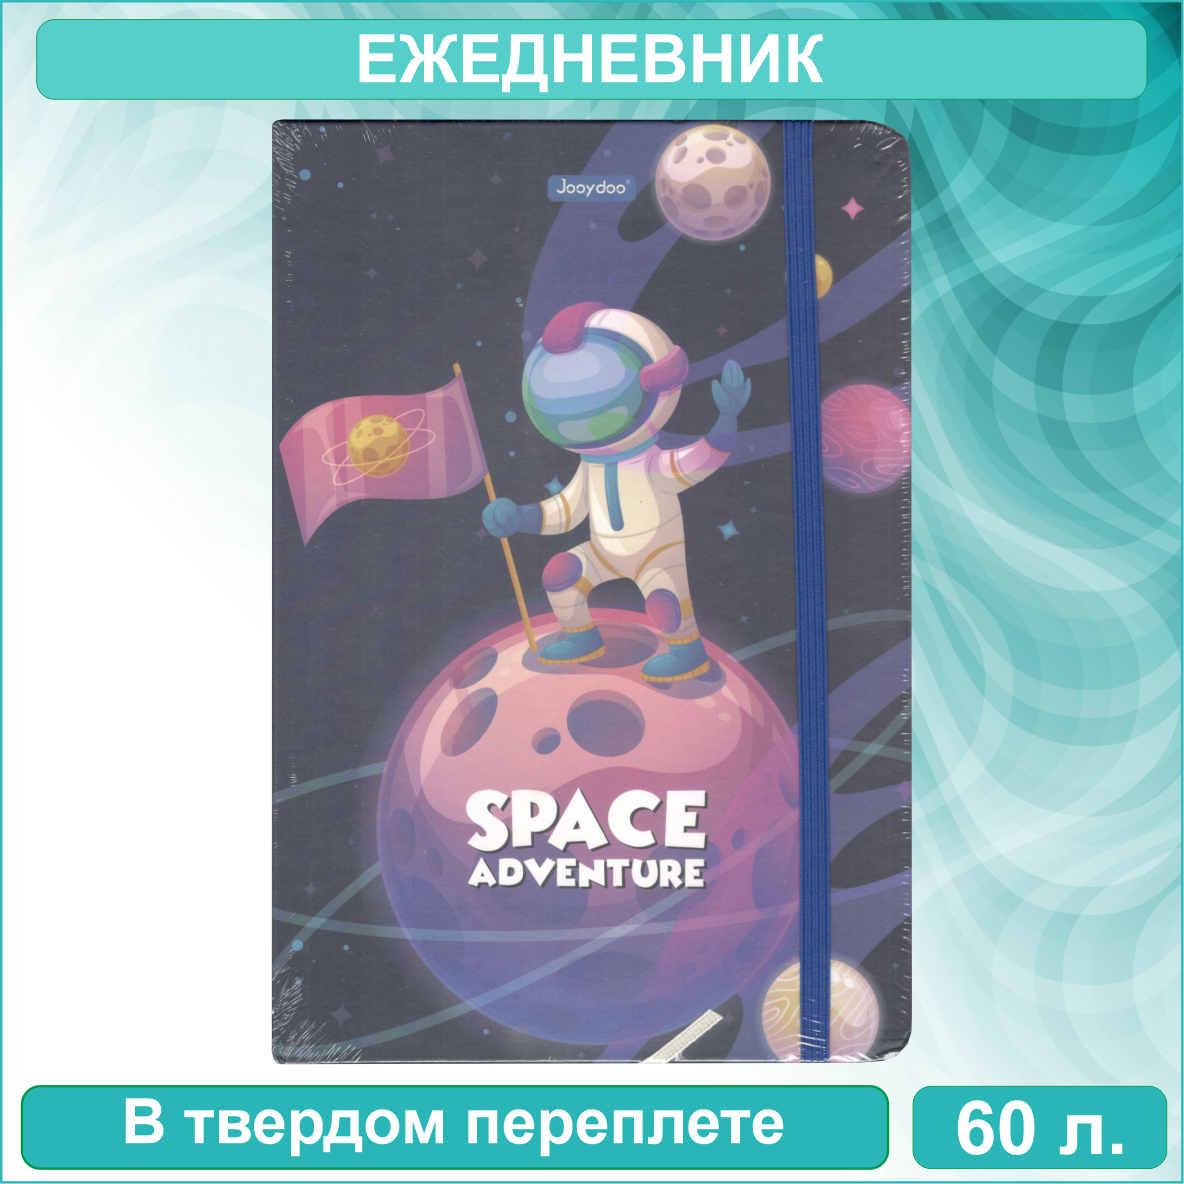 Ежедневник "Space Adventure" (60 листов А5)